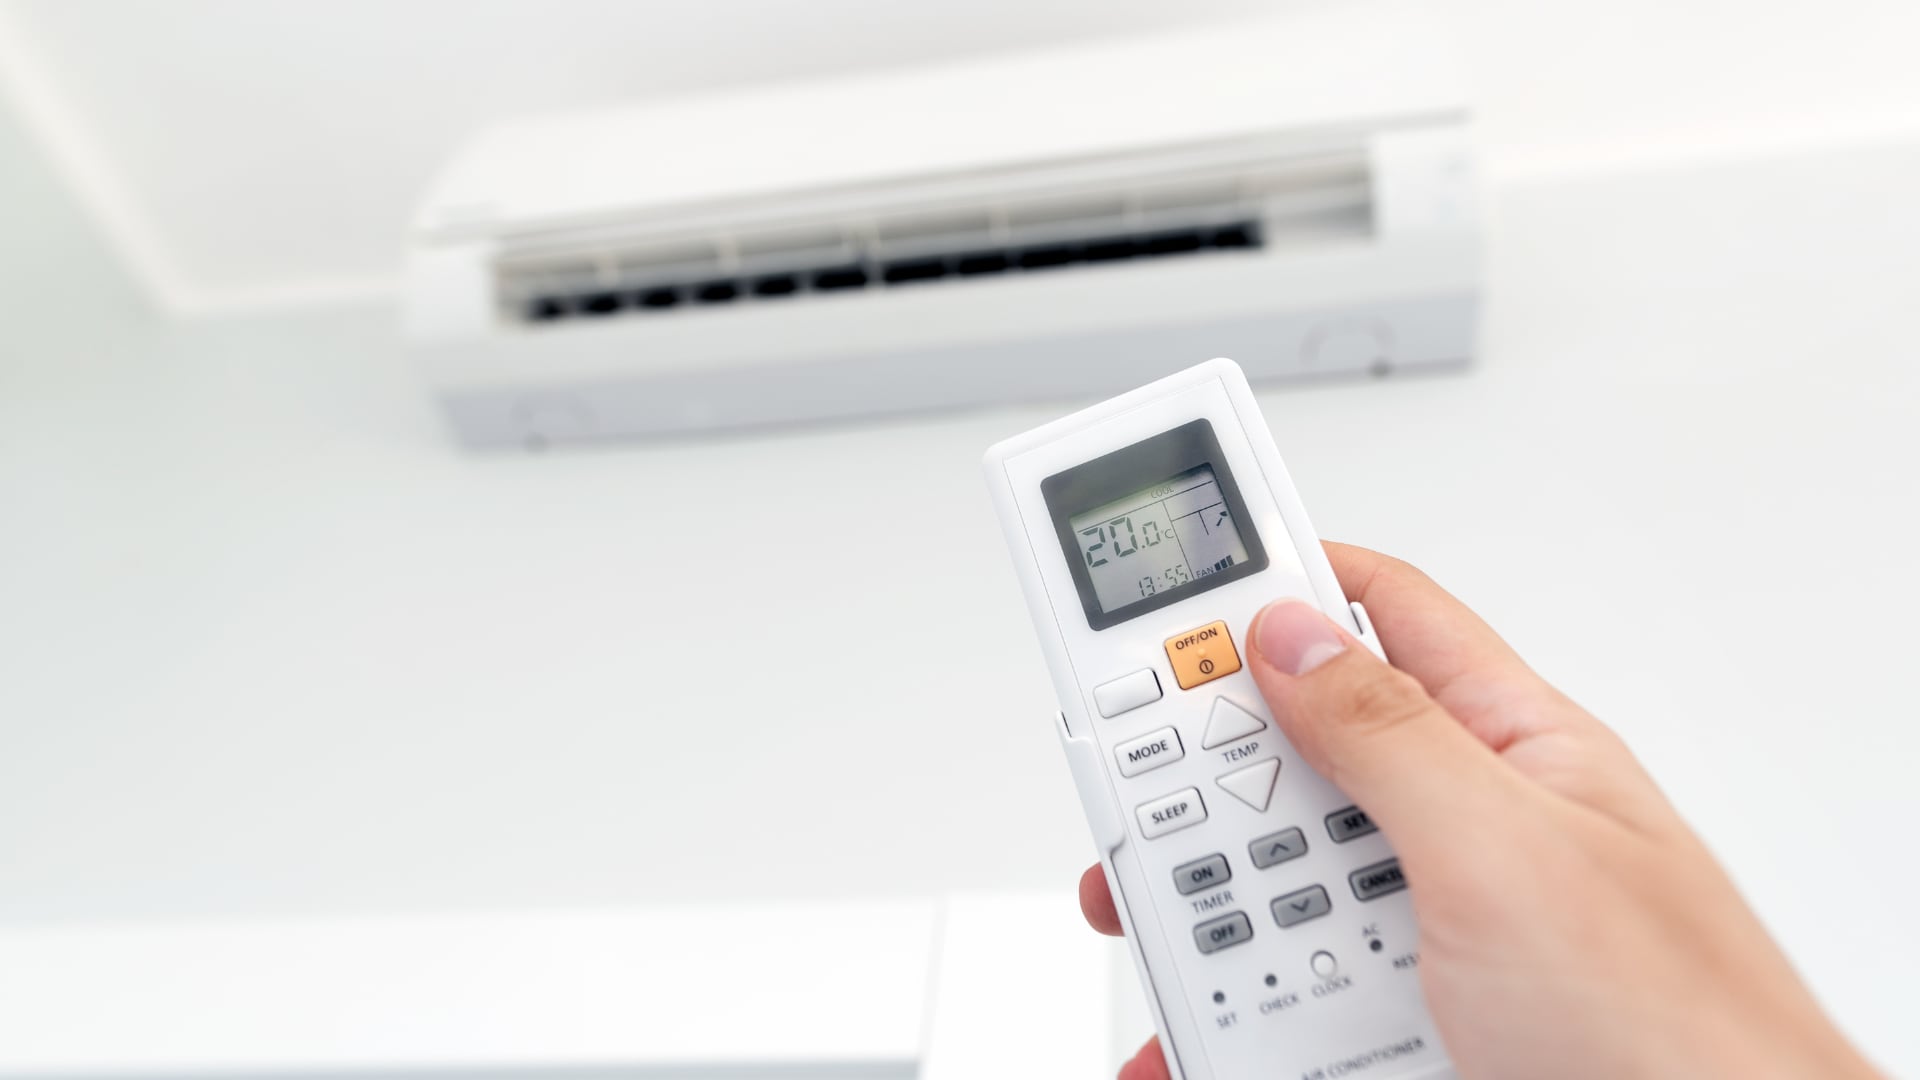 Las altas temperaturas aumentan el uso de electrodomésticos como refrigeradoras, ventiladores y aire acondicionado, lo que puede afectar las finanzas personales si no se adoptan prácticas eficientes.